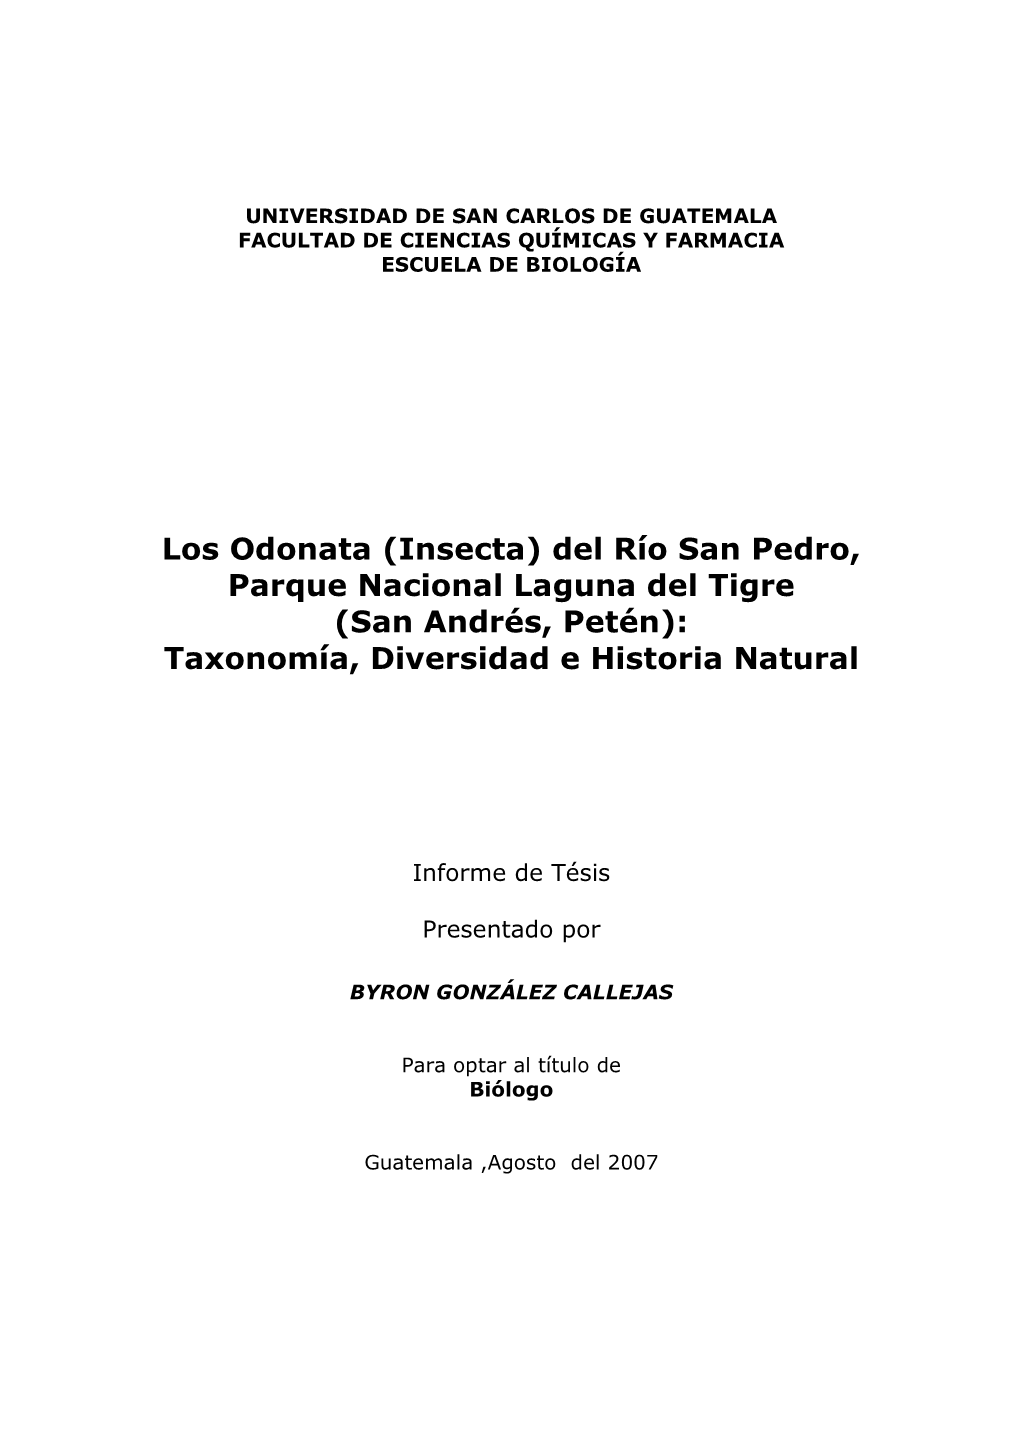 Los Odonata (Insecta) Del Río San Pedro, Parque Nacional Laguna Del Tigre (San Andrés, Petén): Taxonomía, Diversidad E Historia Natural